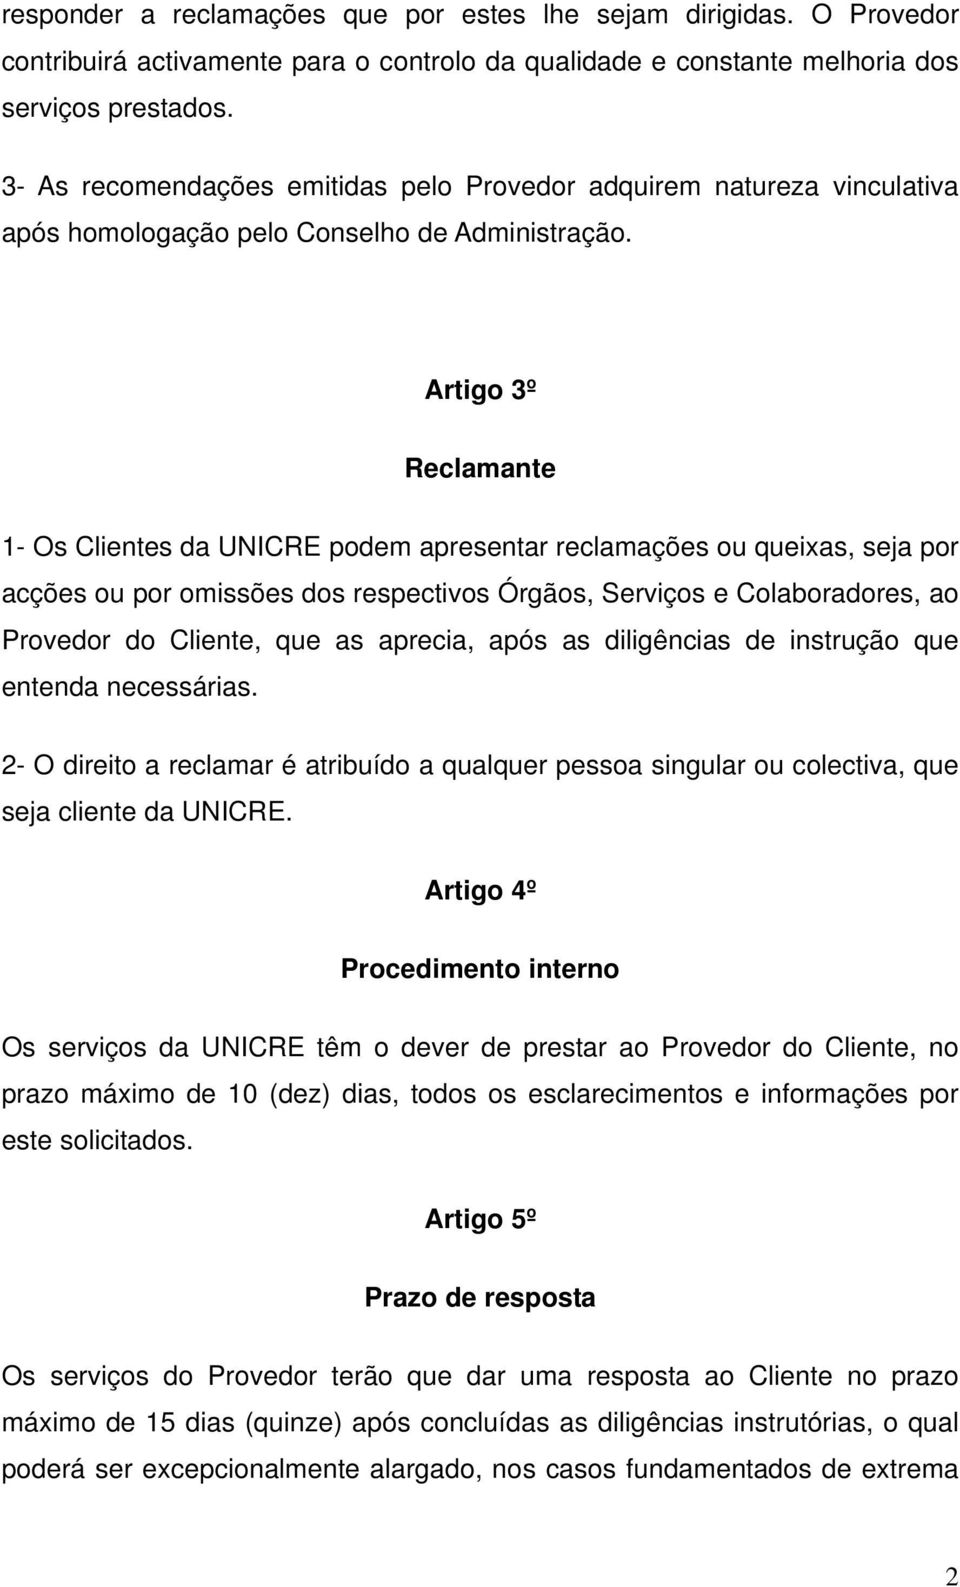 Artigo 3º Reclamante 1- Os Clientes da UNICRE podem apresentar reclamações ou queixas, seja por acções ou por omissões dos respectivos Órgãos, Serviços e Colaboradores, ao Provedor do Cliente, que as